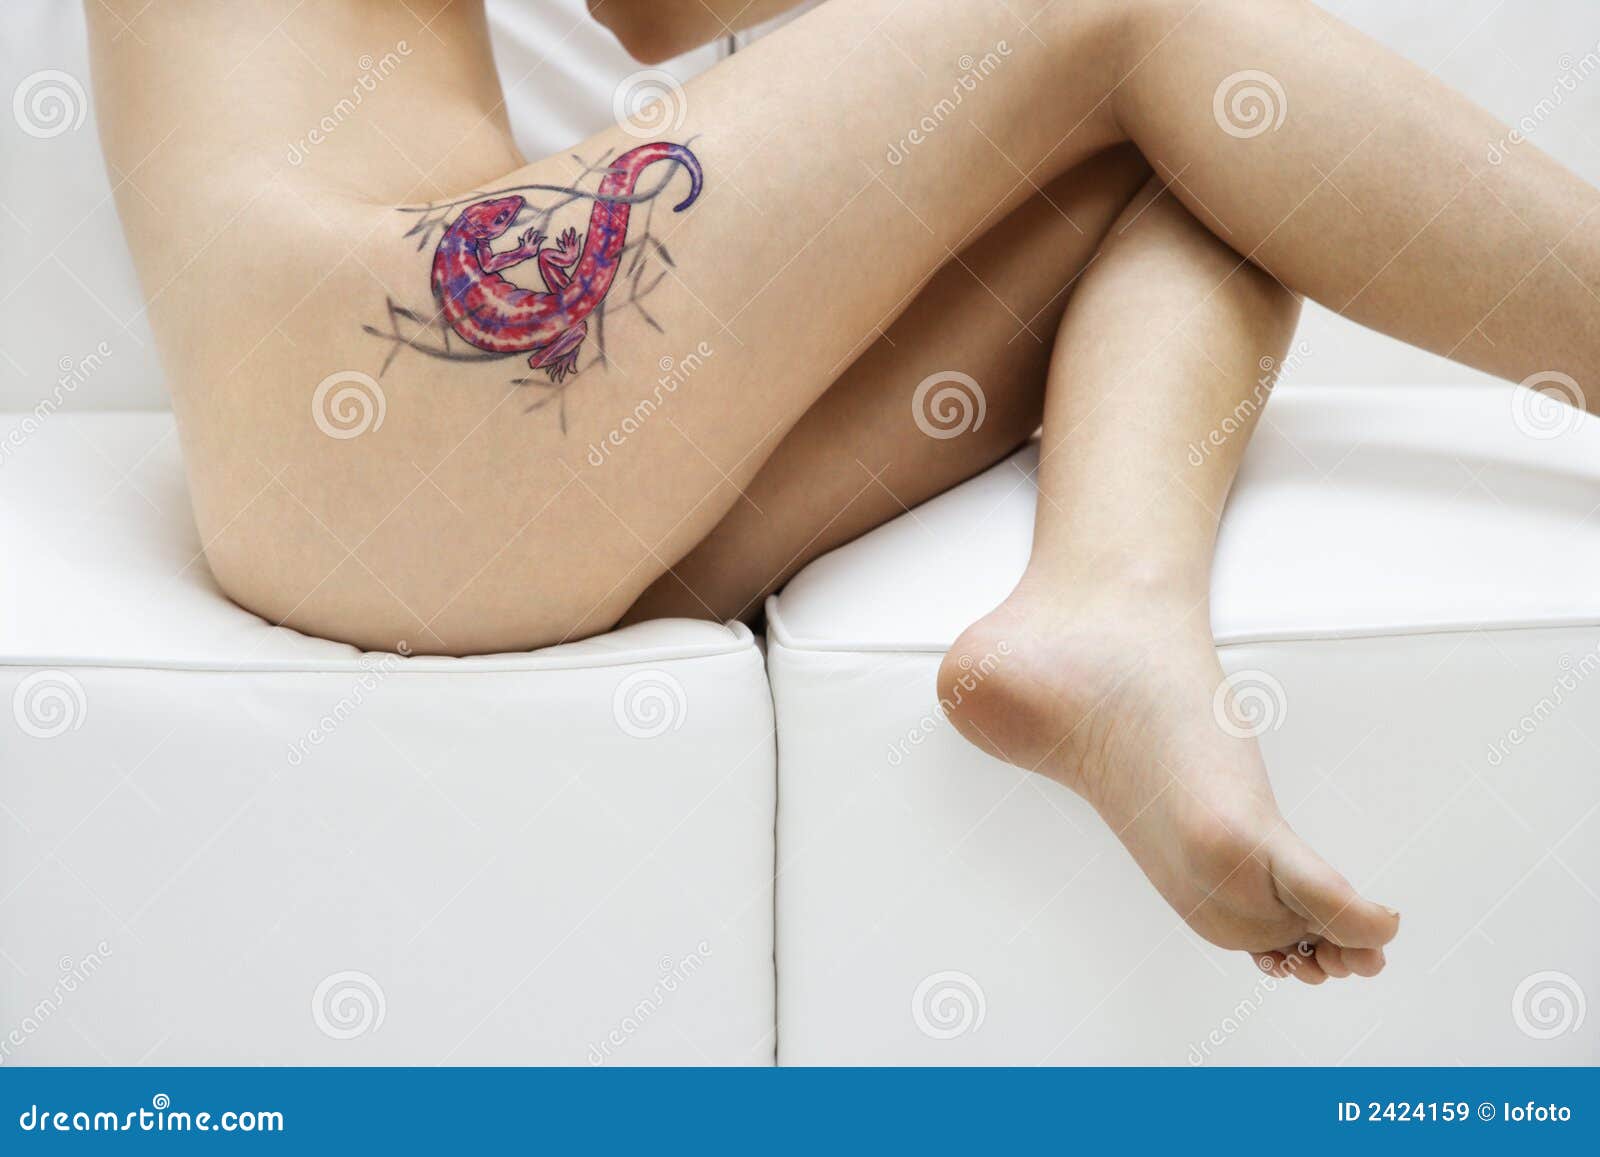 Tattooed Women Nude